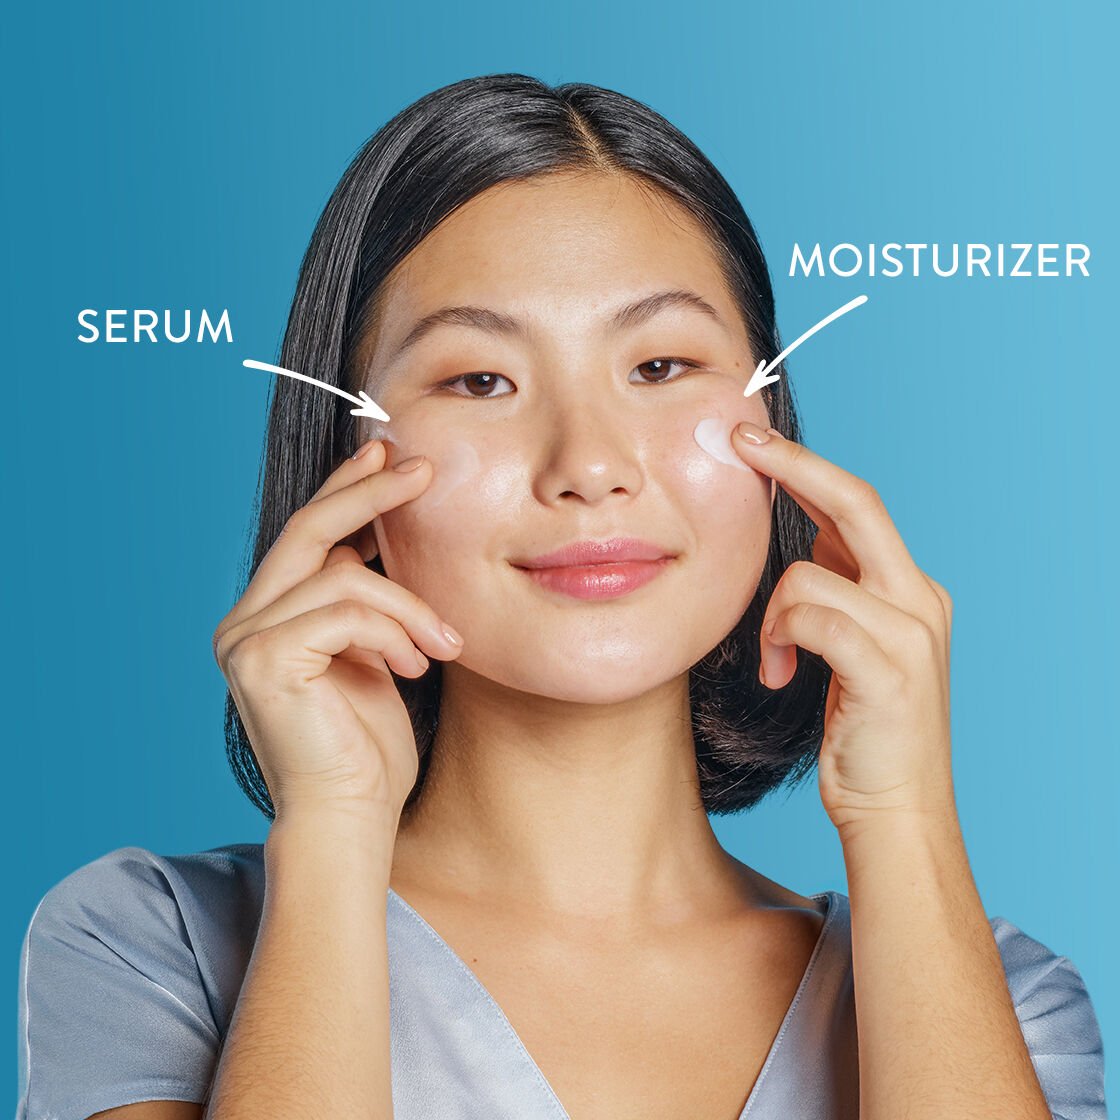 Serum versus moisturizer